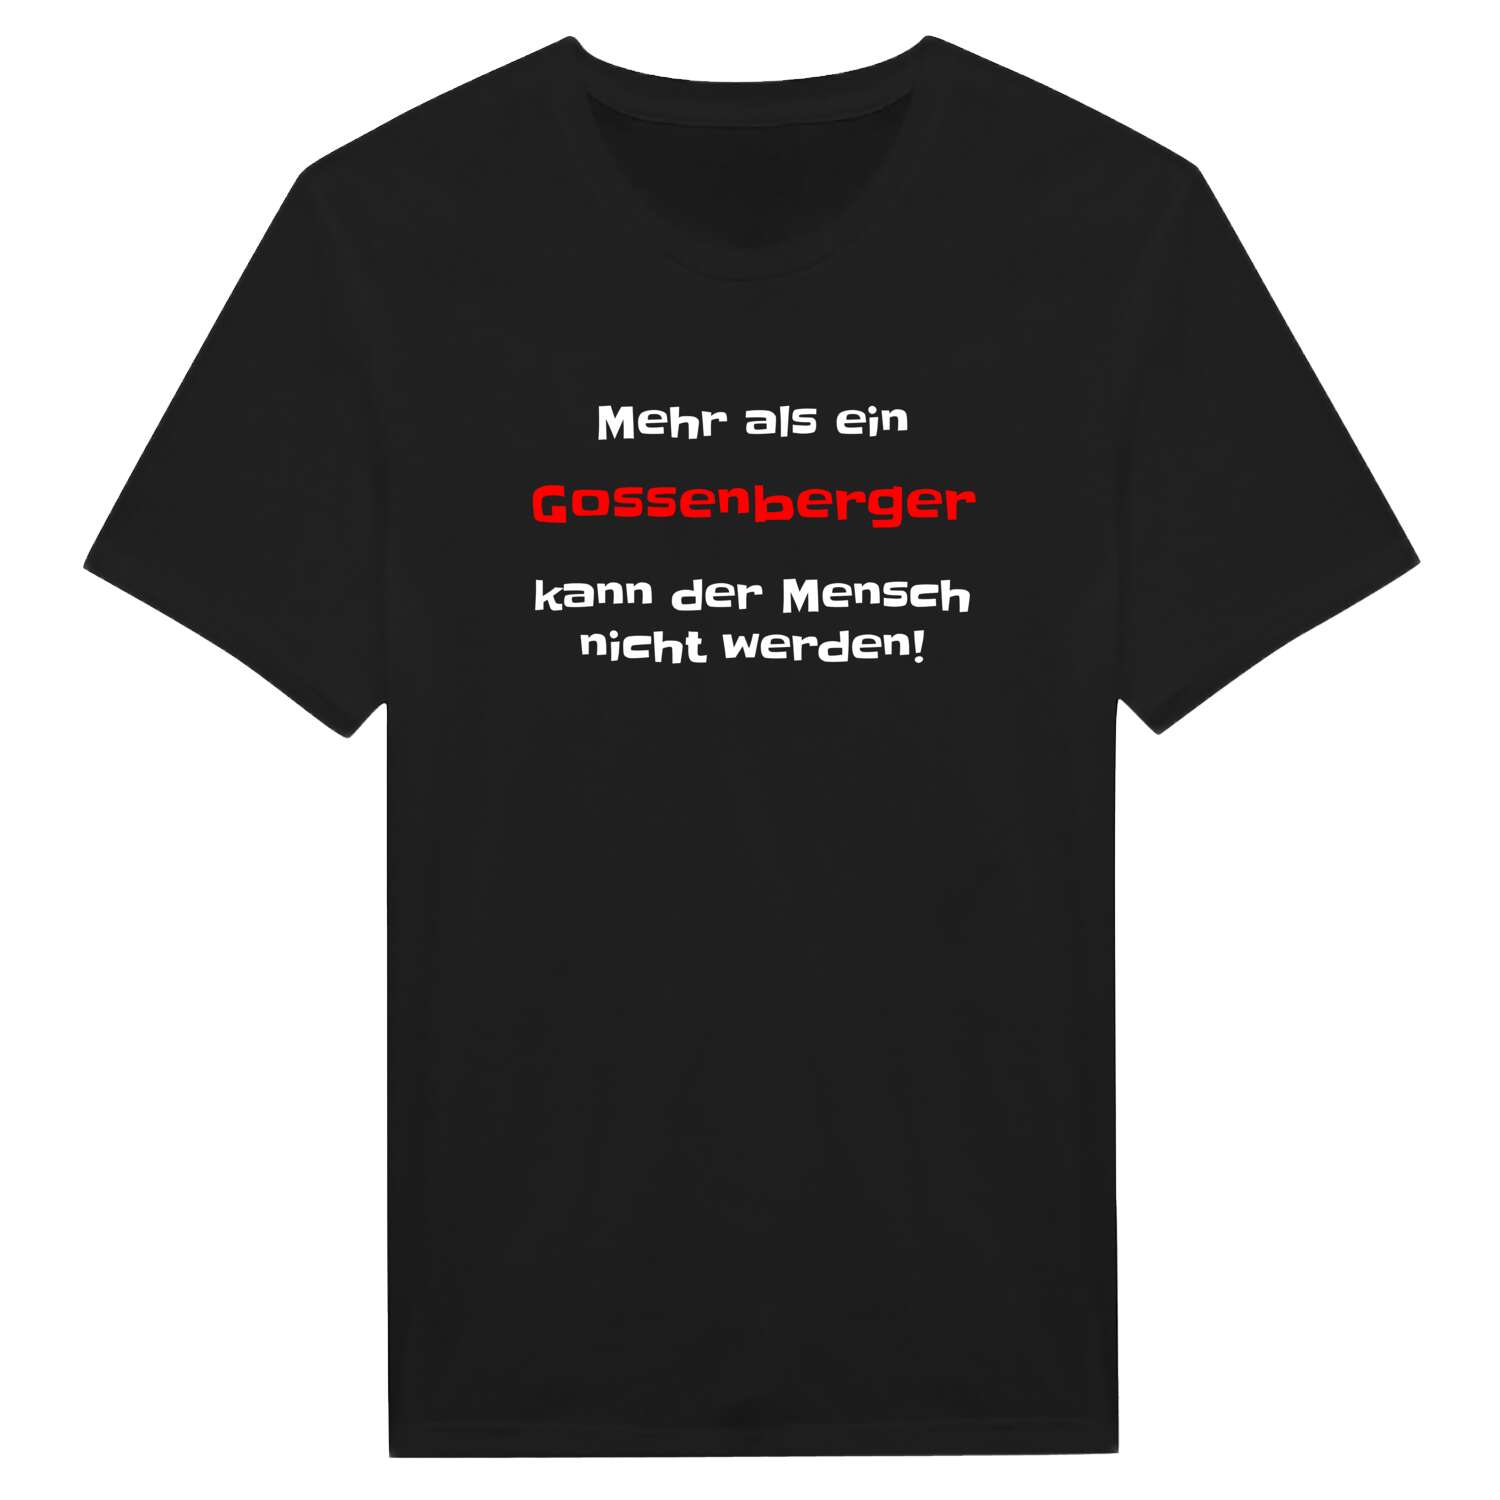 Gossenberg T-Shirt »Mehr als ein«